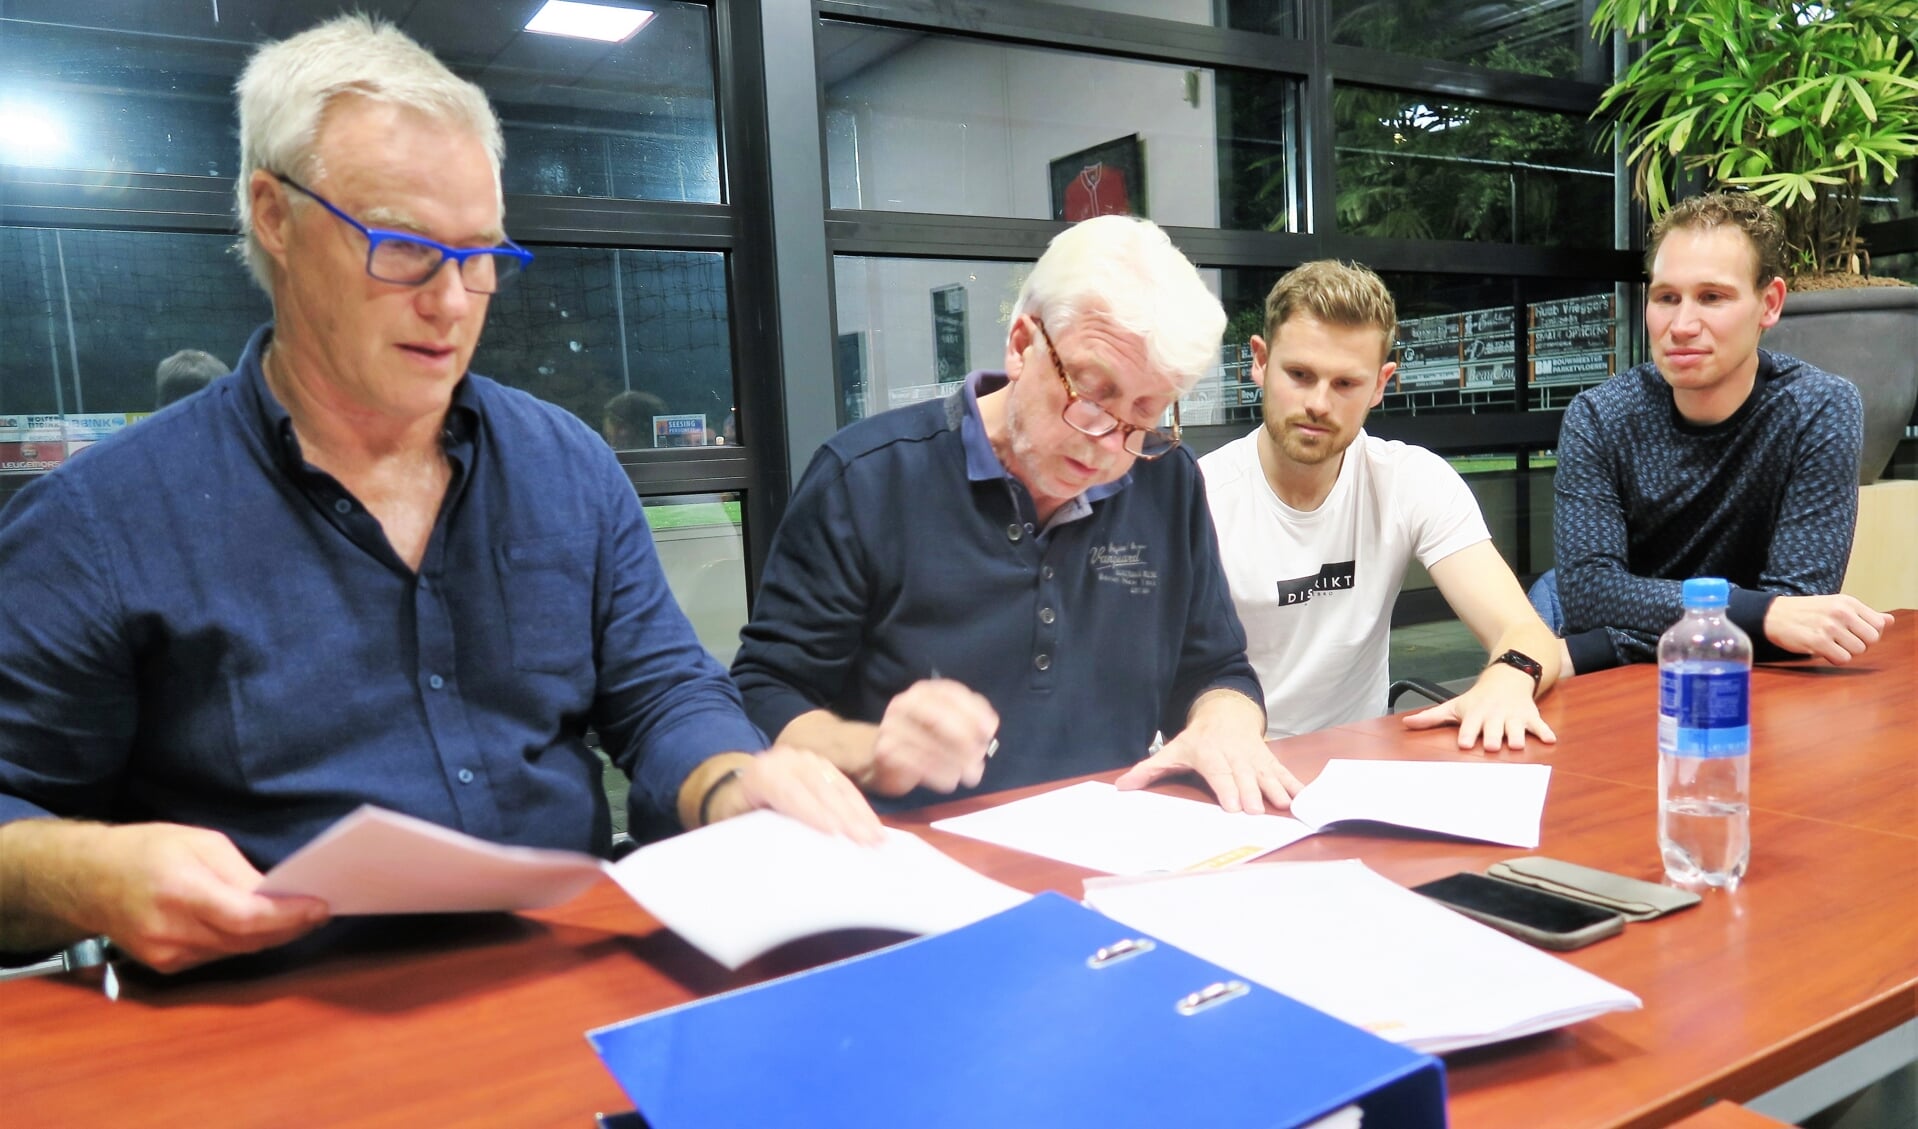 Het contract wordt ondertekend met vlnr Han Otten, Leo Groeneveld, Ruud Elferink en Frank Buesink.